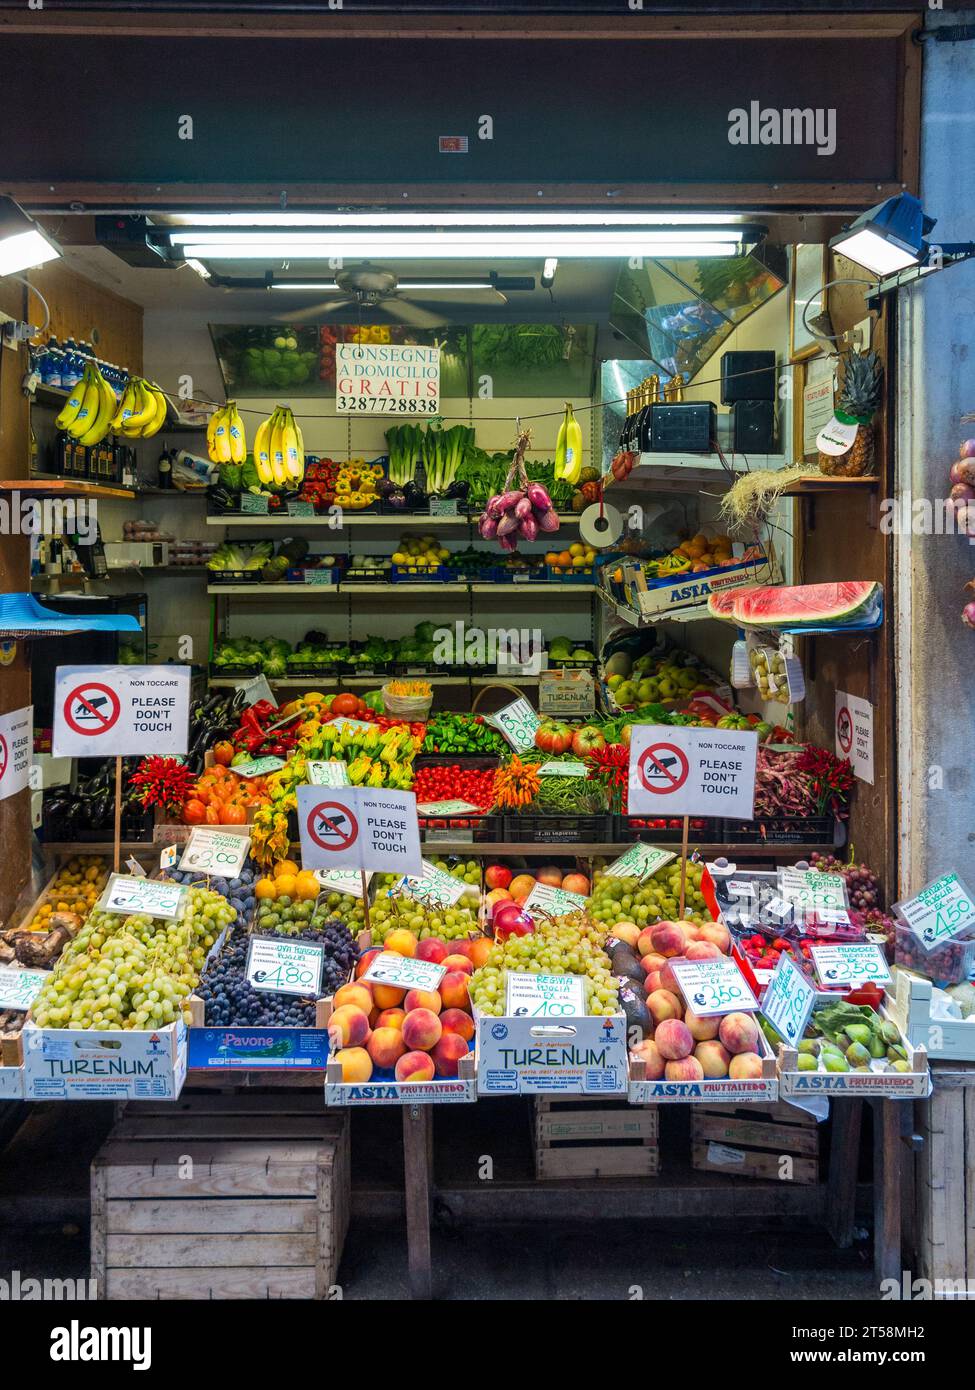 Un'esposizione di frutta e verdura da un mercante di Venezia. I cartelli indicano che non è necessario toccare la merce. L'interno del negozio è illuminato Foto Stock